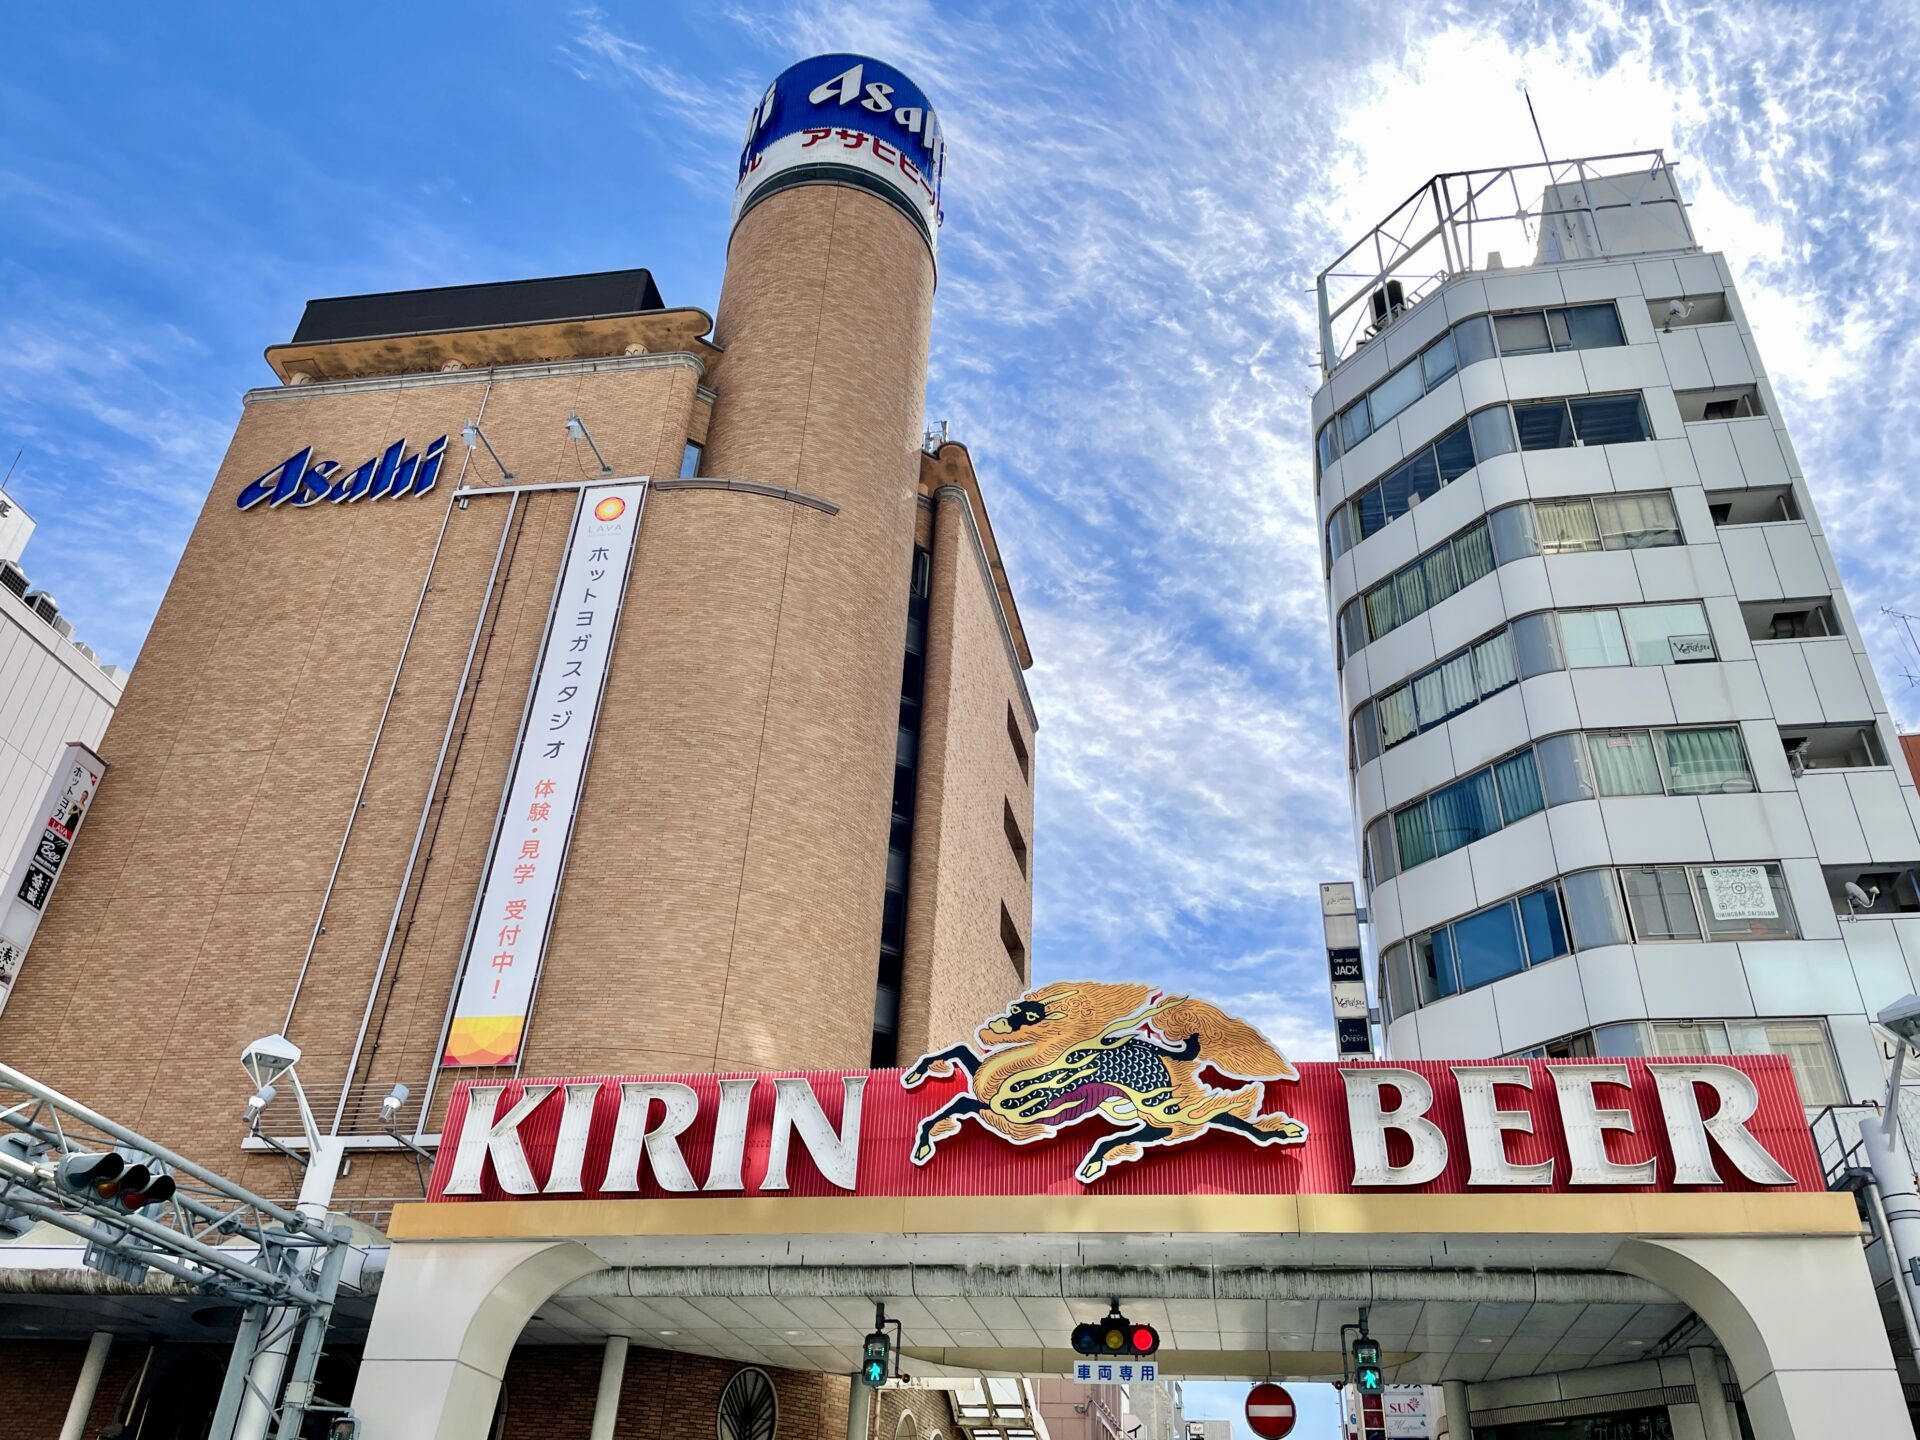 「ヒルトン広島」旅ラン 広島アサヒビール館とキリンビールの看板